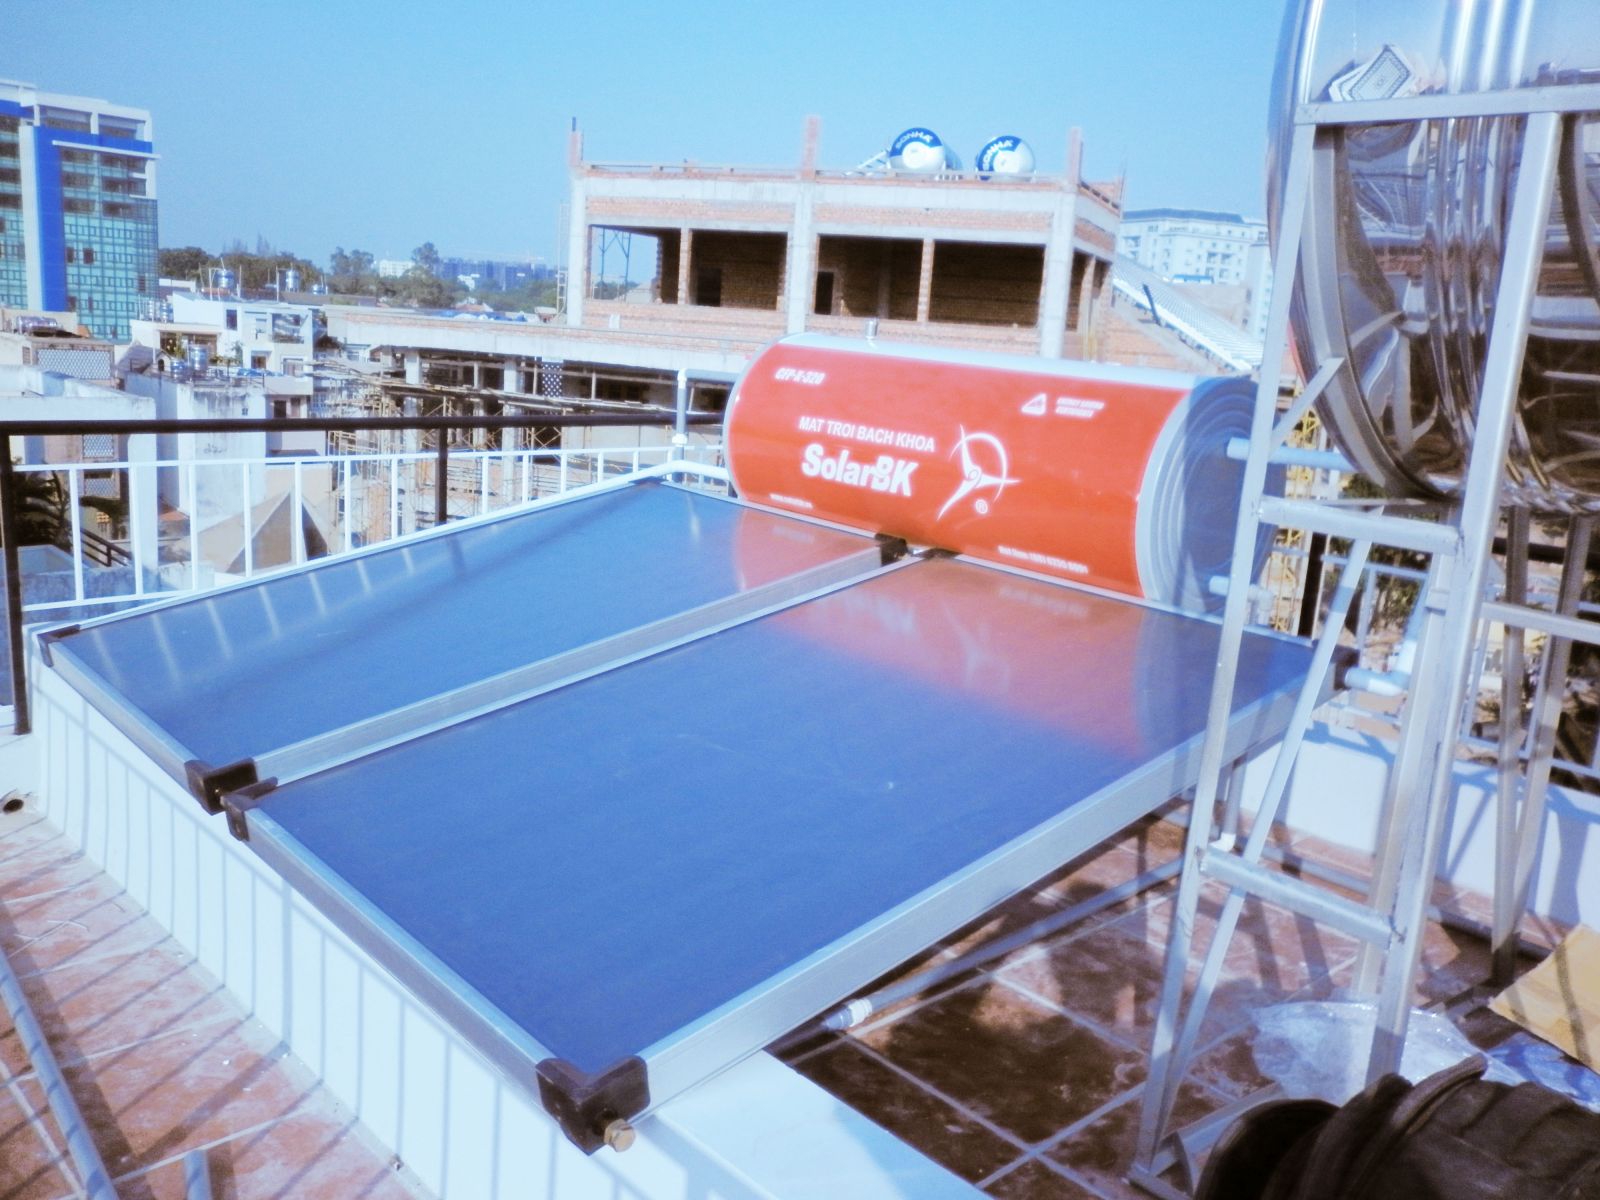 Máy nước nóng năng lượng mặt trời dạng tấm phẳng CFP-X-320